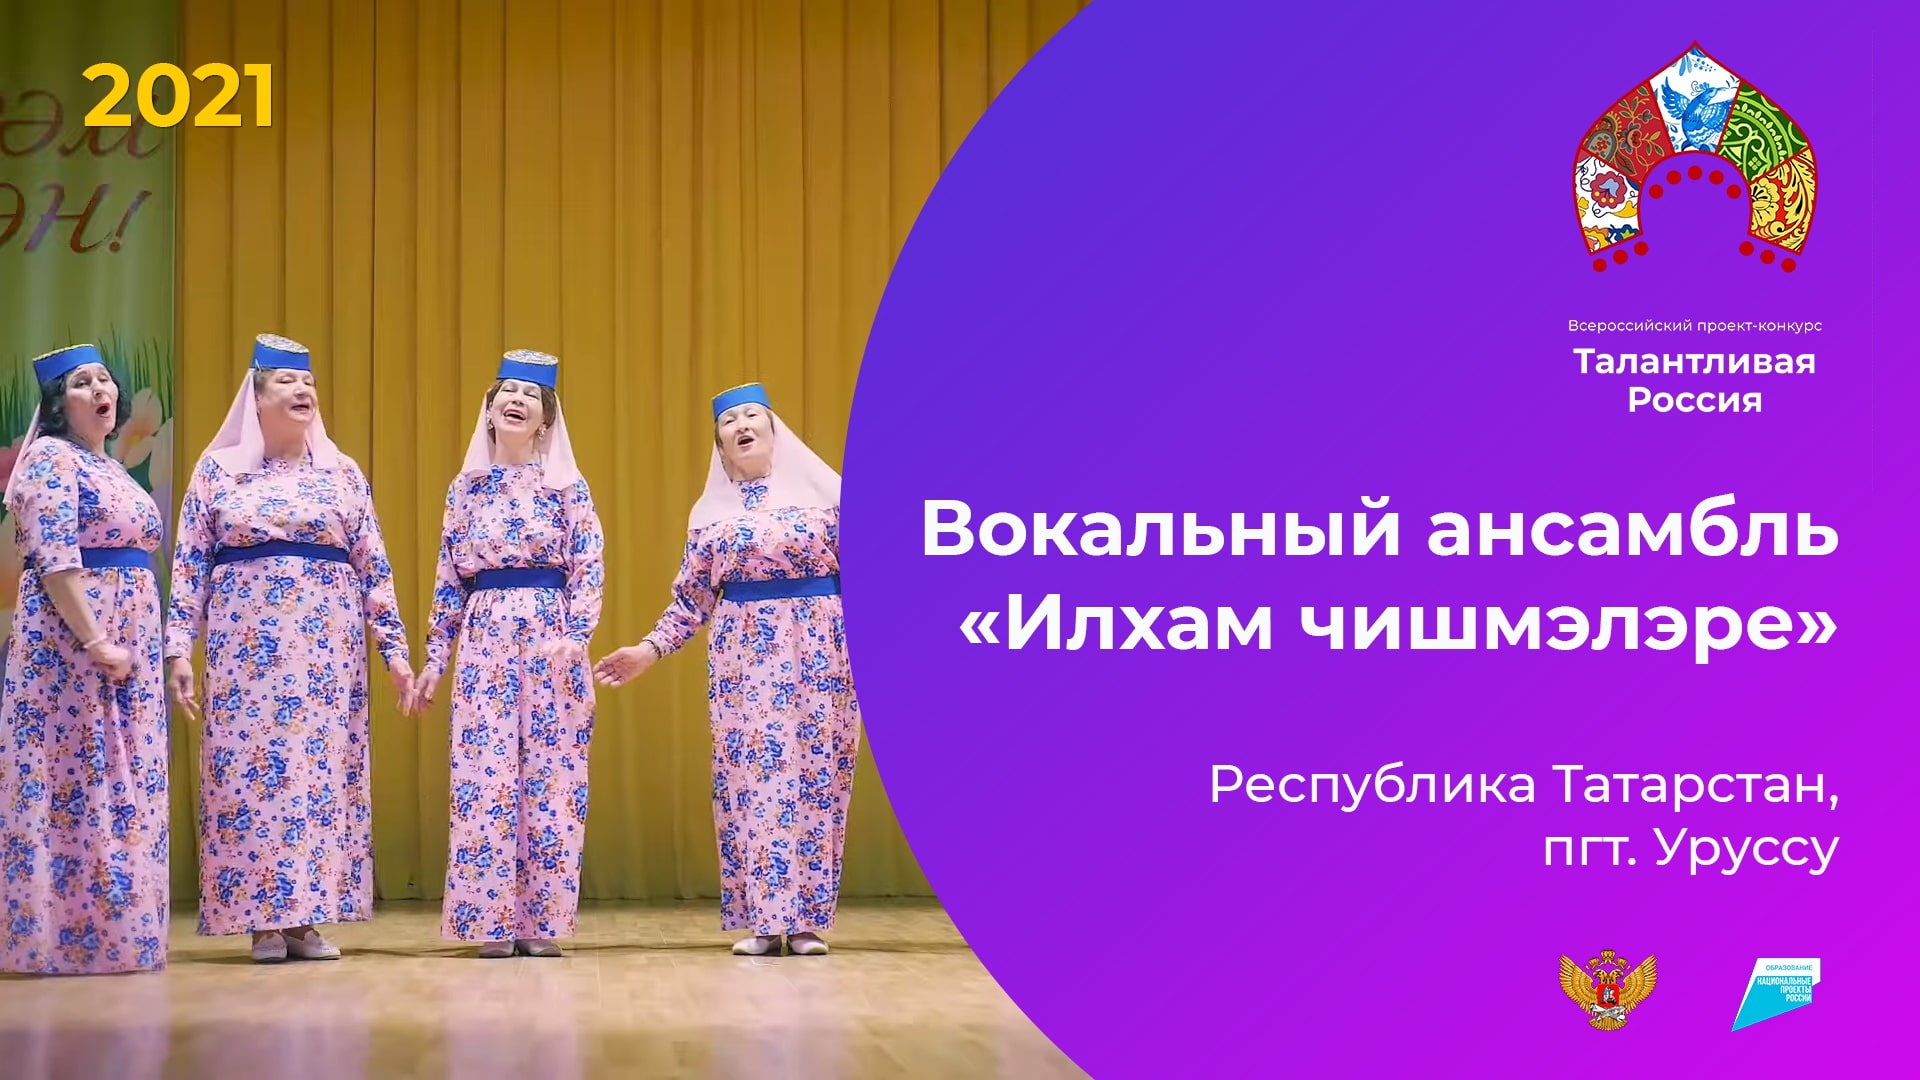 Вокальный ансамбль "Илхам чишмэлэре"